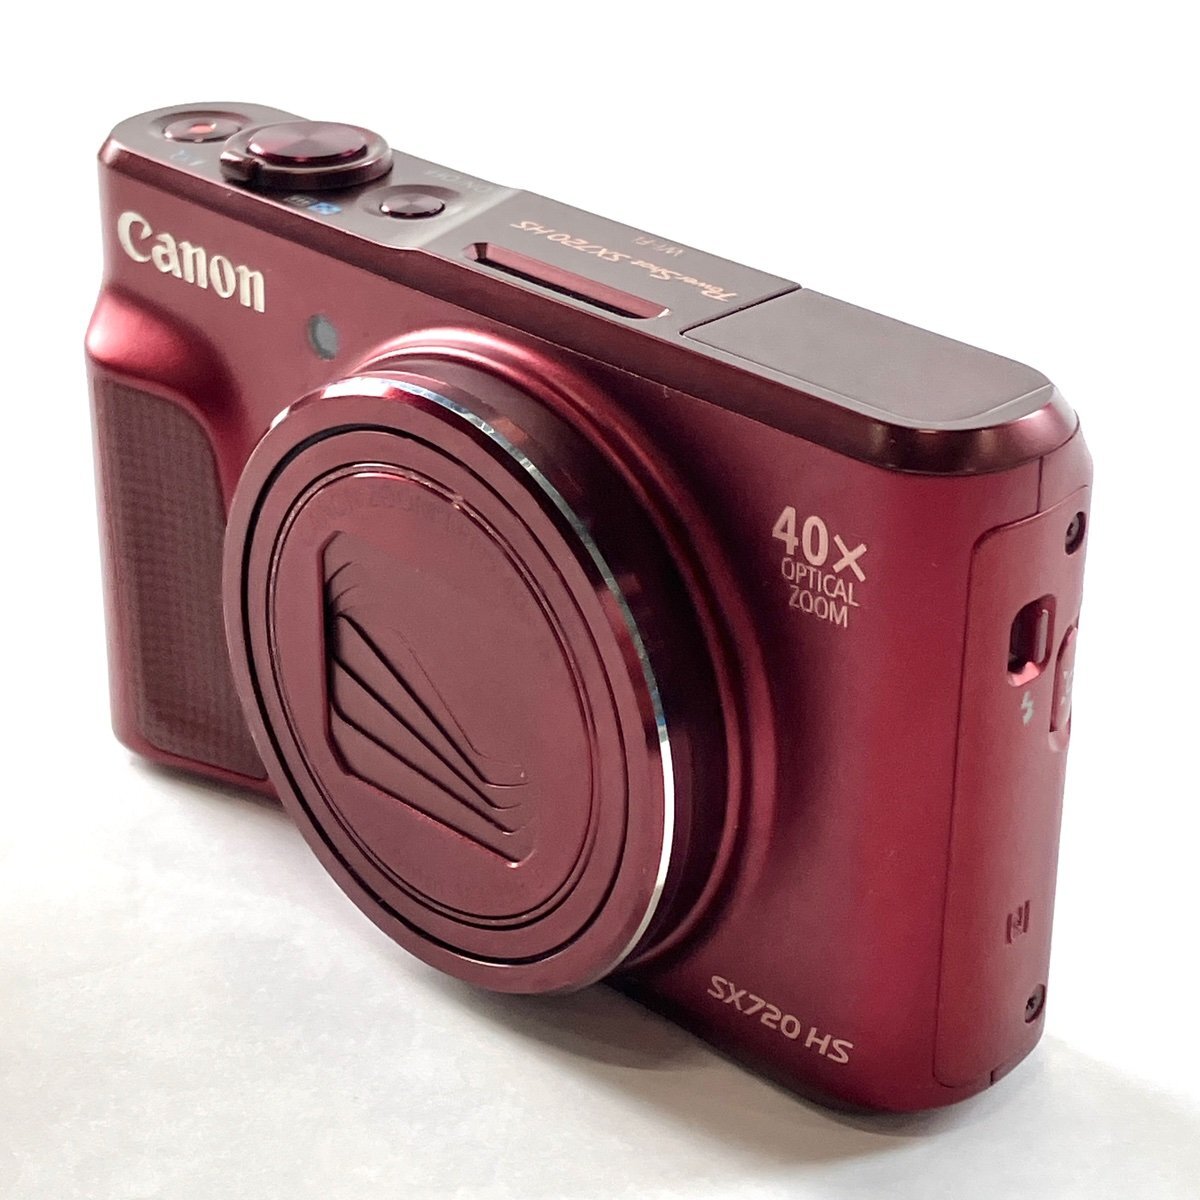 キヤノン Canon PowerShot SX720 HS レッド コンパクトデジタルカメラ 【中古】_バイセル 31053_2